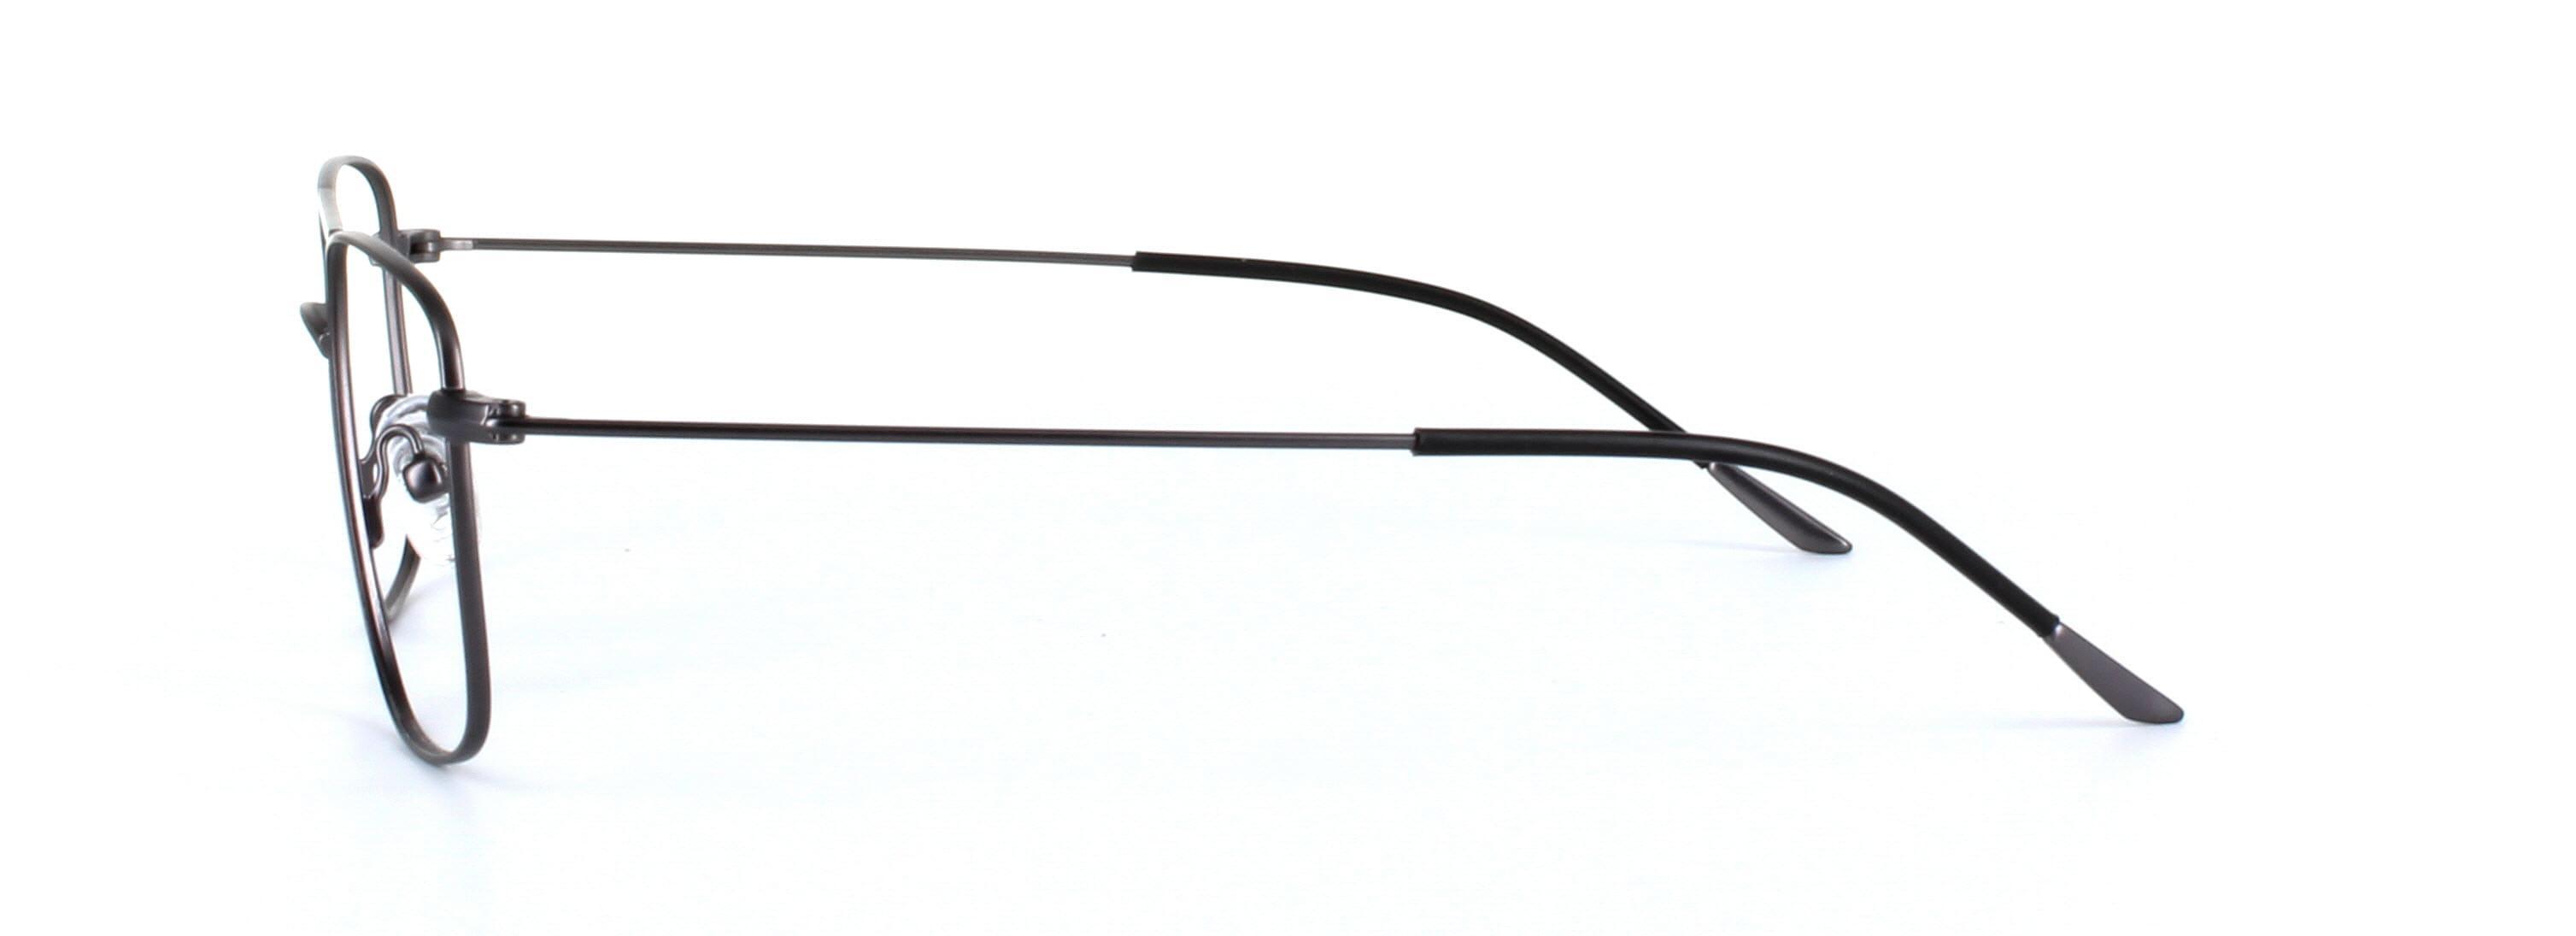 Blade Gunmetal Full Rim Aviator Metal Glasses - Image View 2